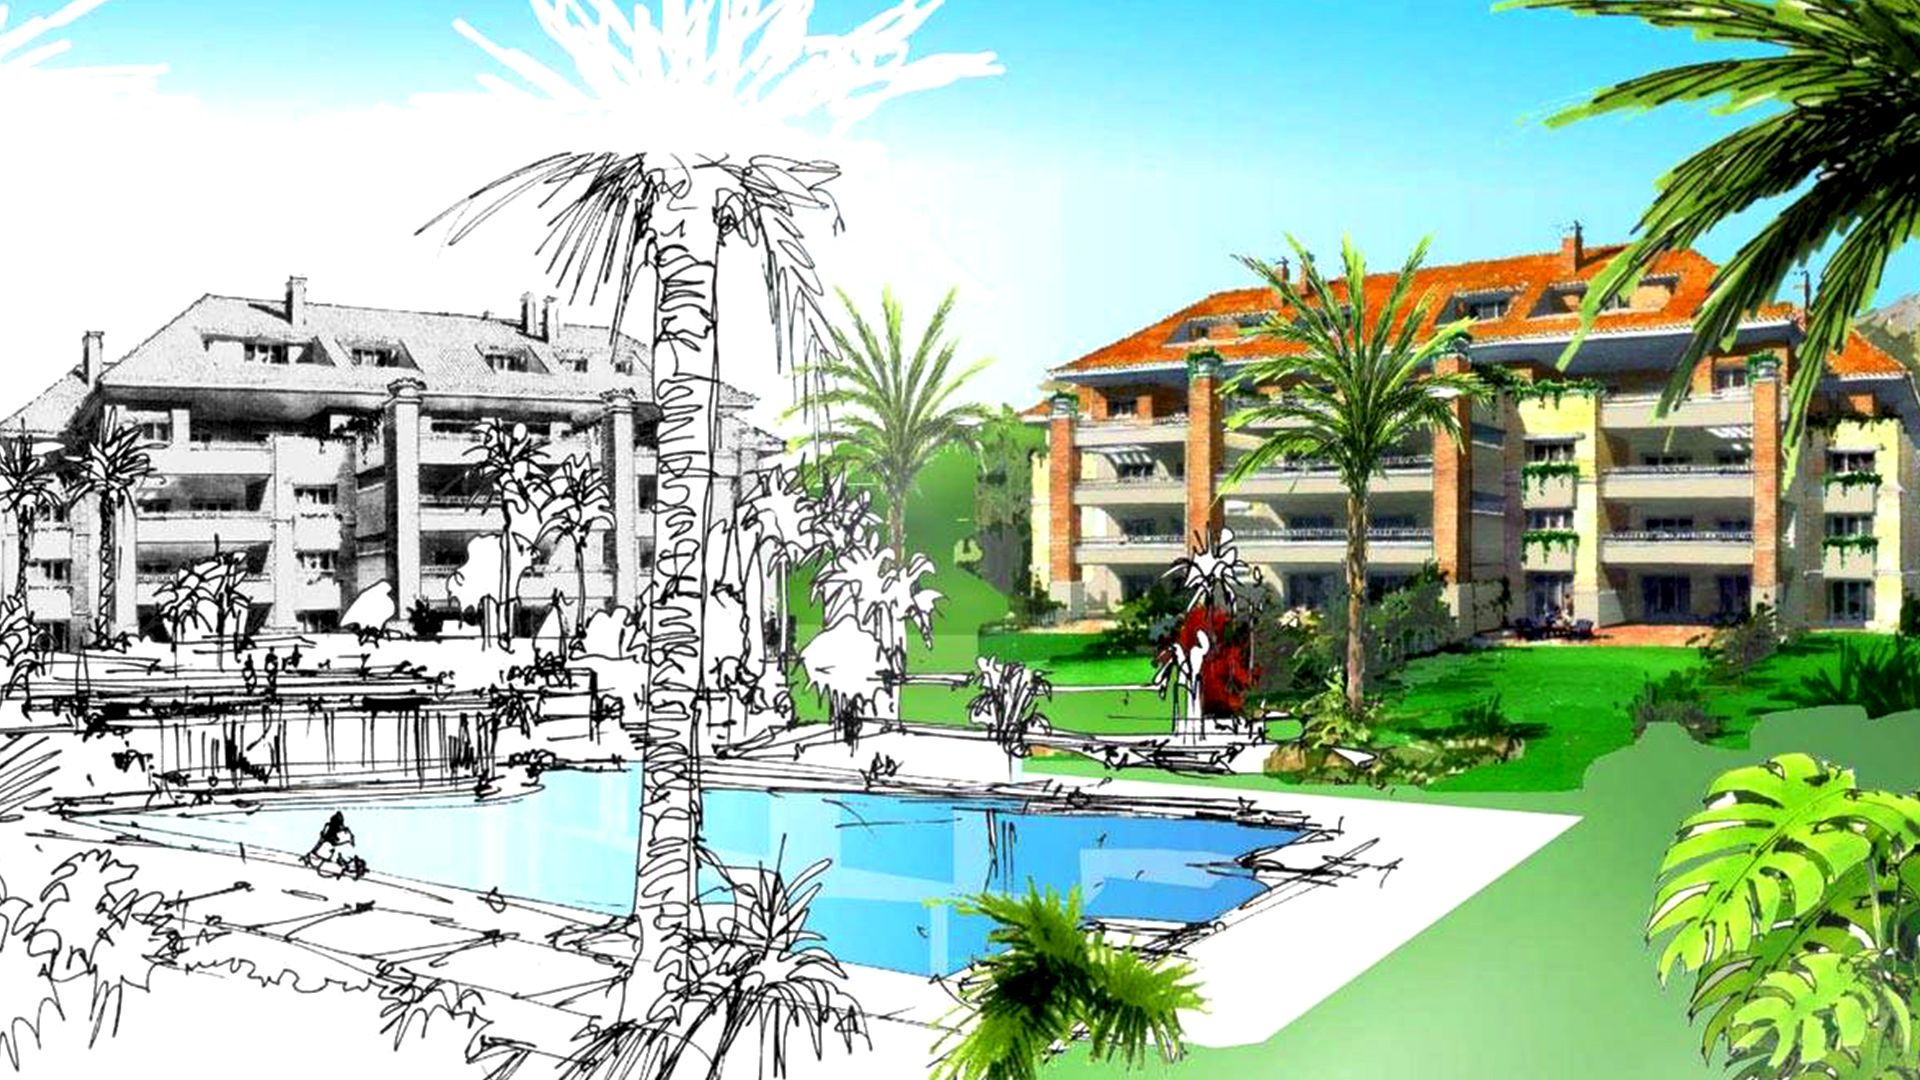 Urbanización La Trinidad es un conjunto residencial ubicado en Marbella 5